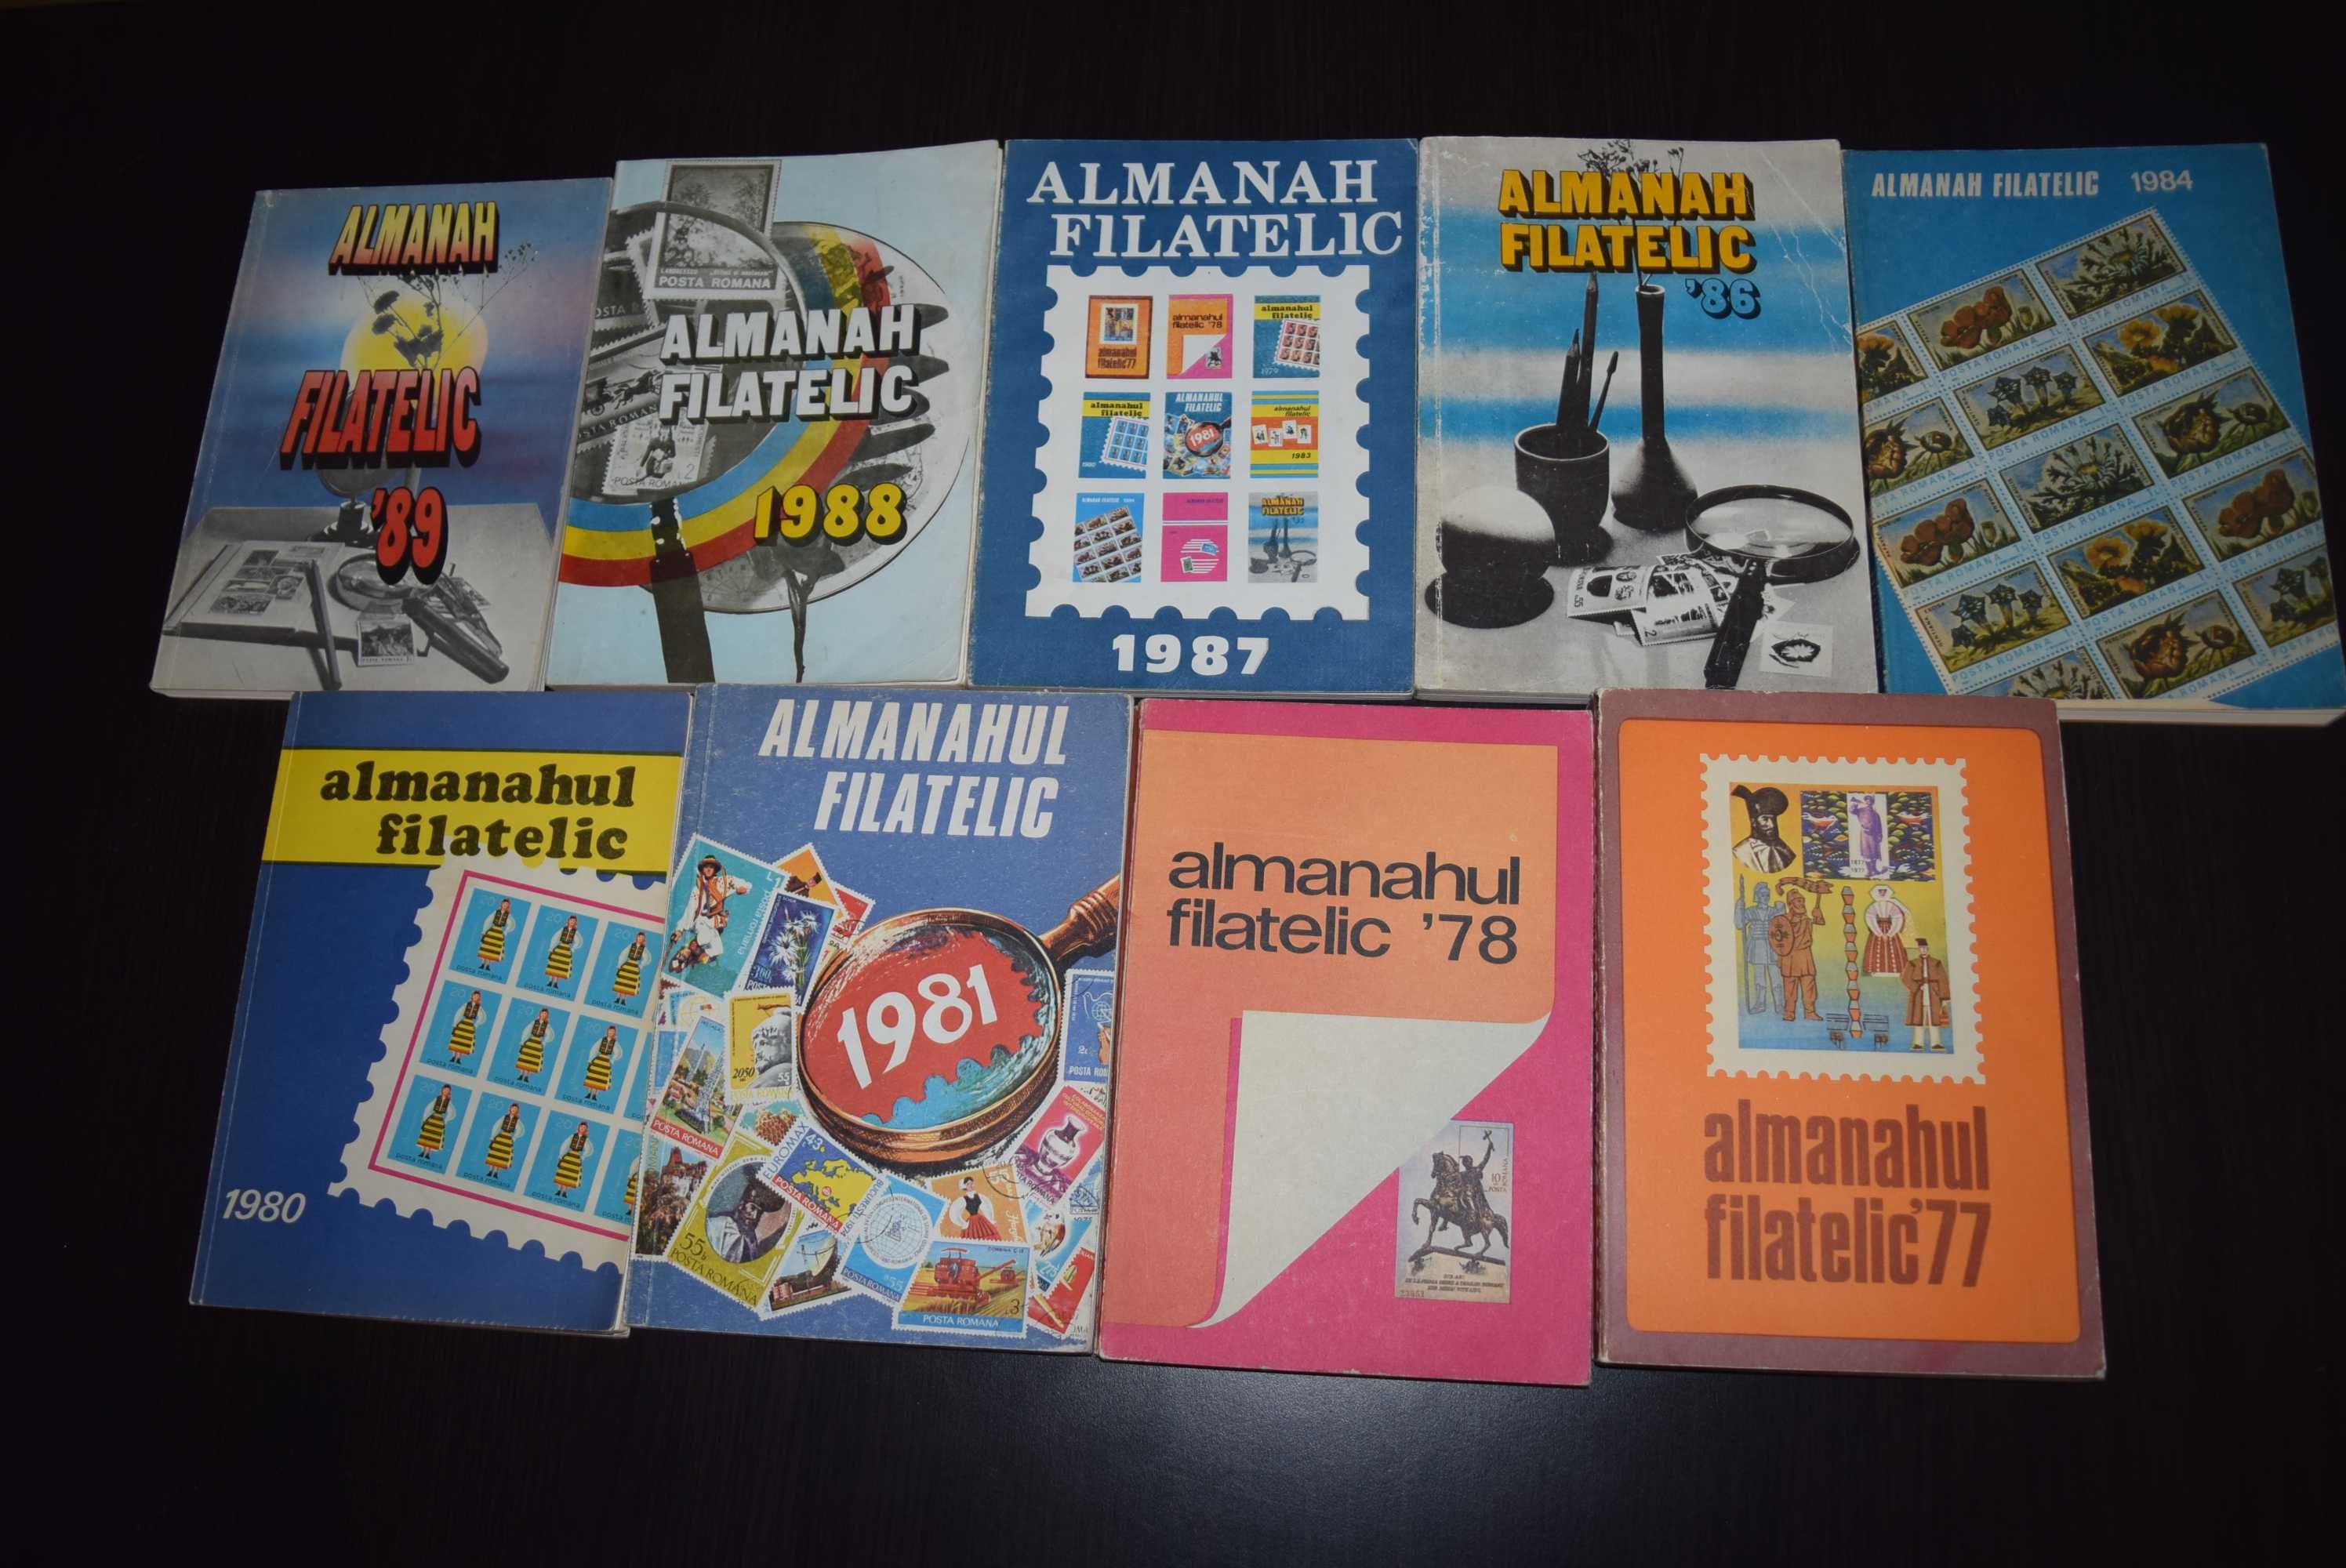 Colectie "Almanah Filatelic"